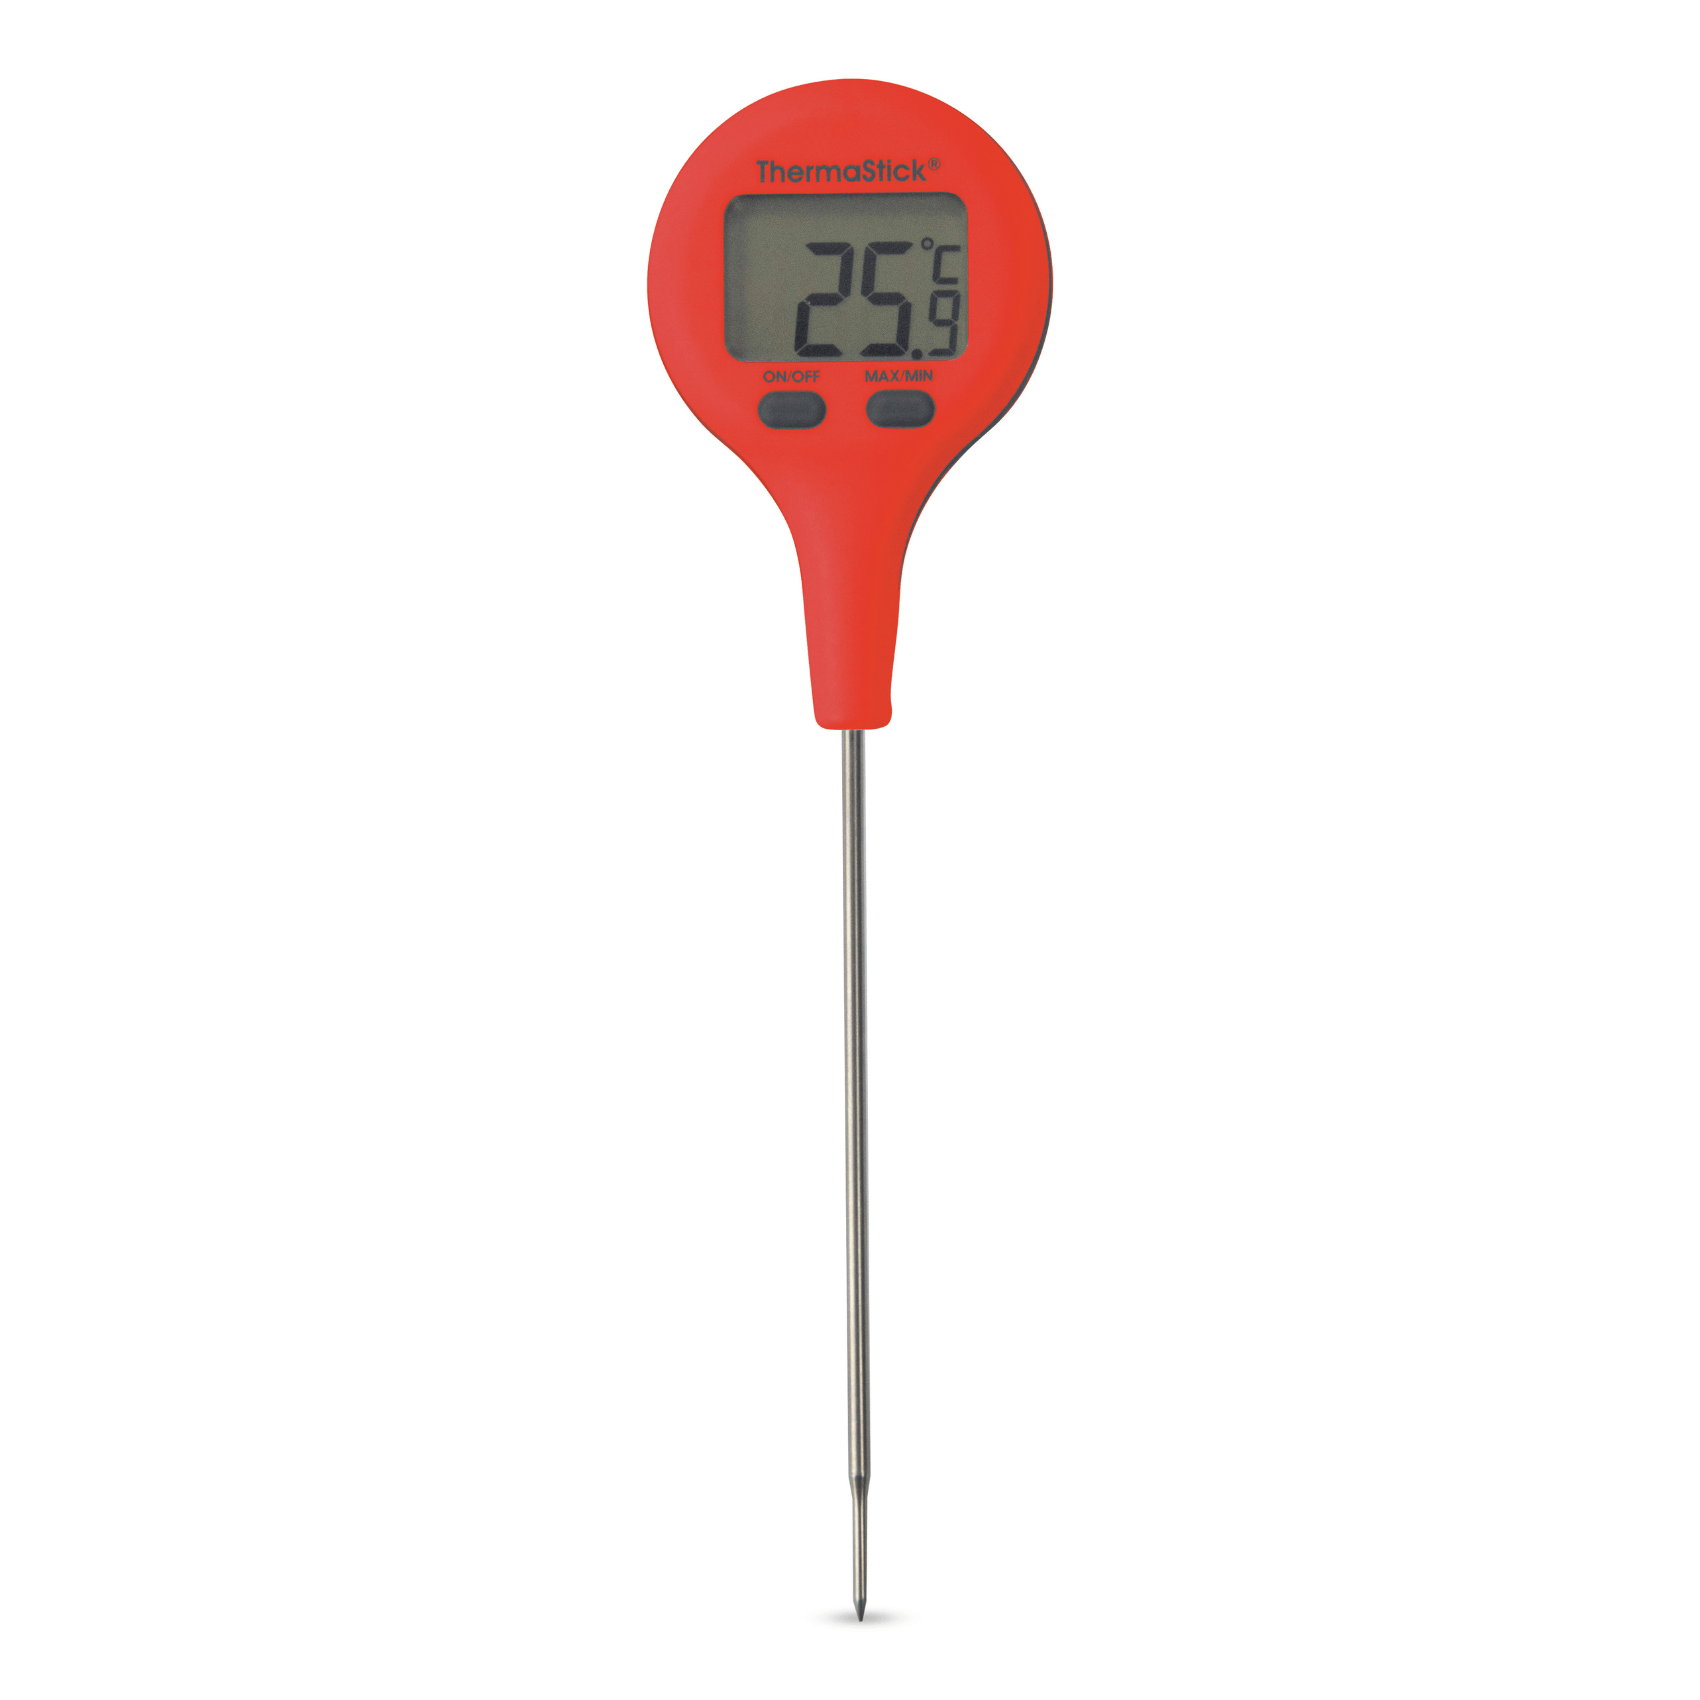 un thermomètre numérique Thermometre.fr ThermaStick rouge sur fond blanc.